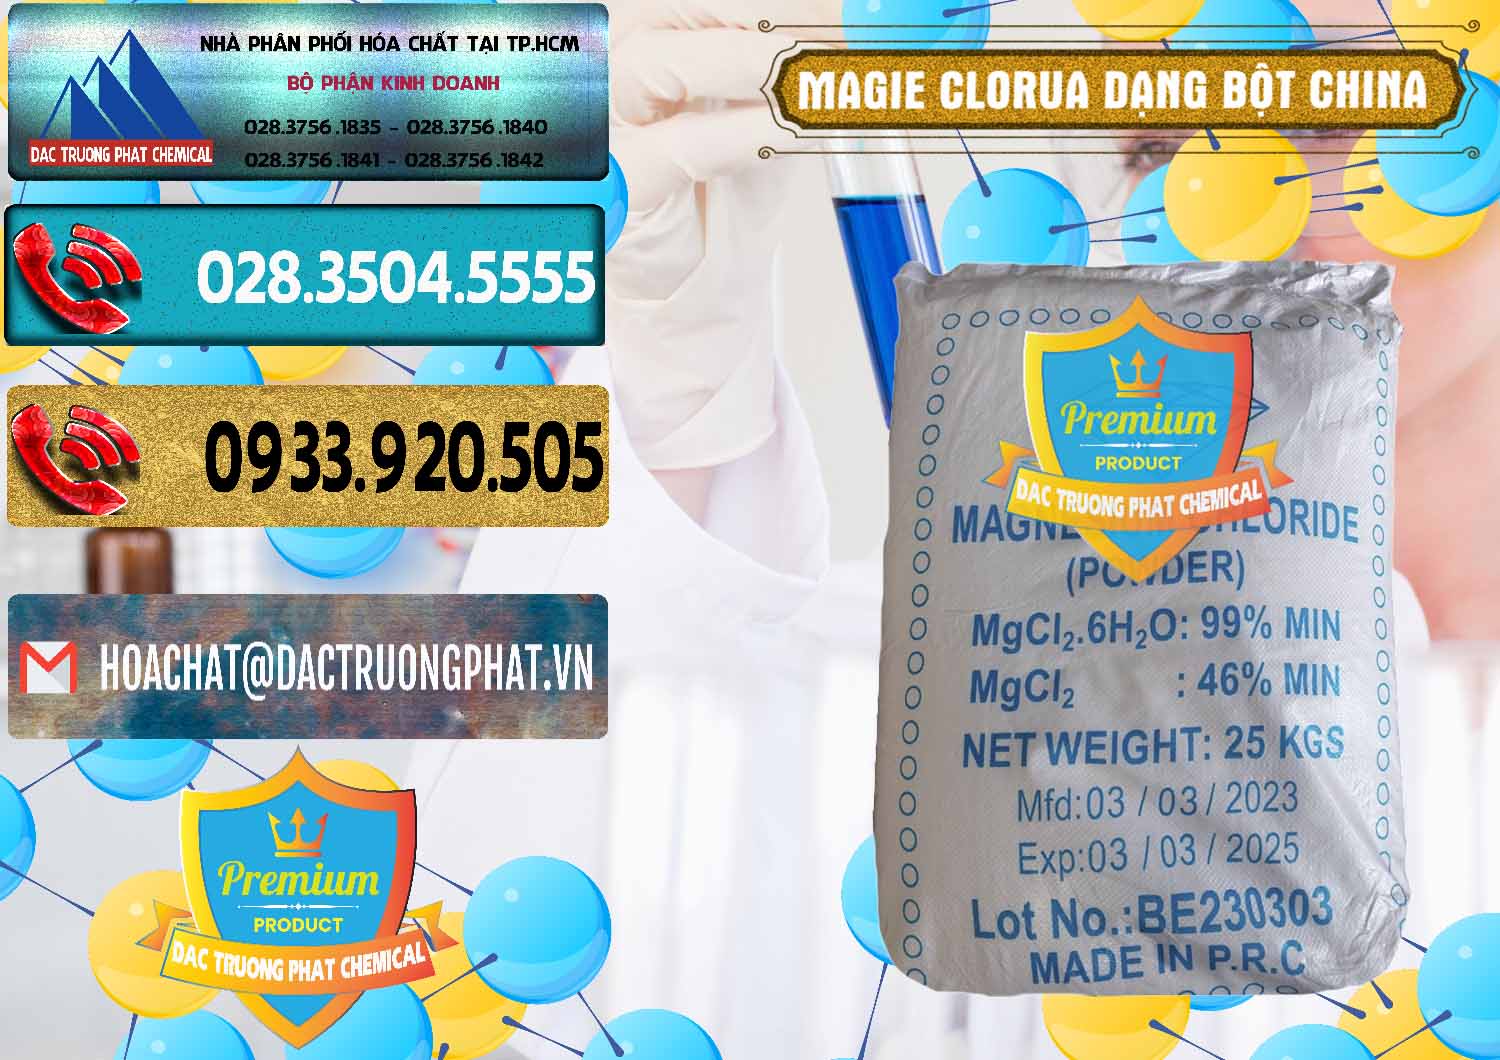 Đơn vị chuyên kinh doanh & bán Magie Clorua – MGCL2 96% Dạng Bột Logo Kim Cương Trung Quốc China - 0387 - Nhà cung cấp & bán hóa chất tại TP.HCM - hoachatdetnhuom.com